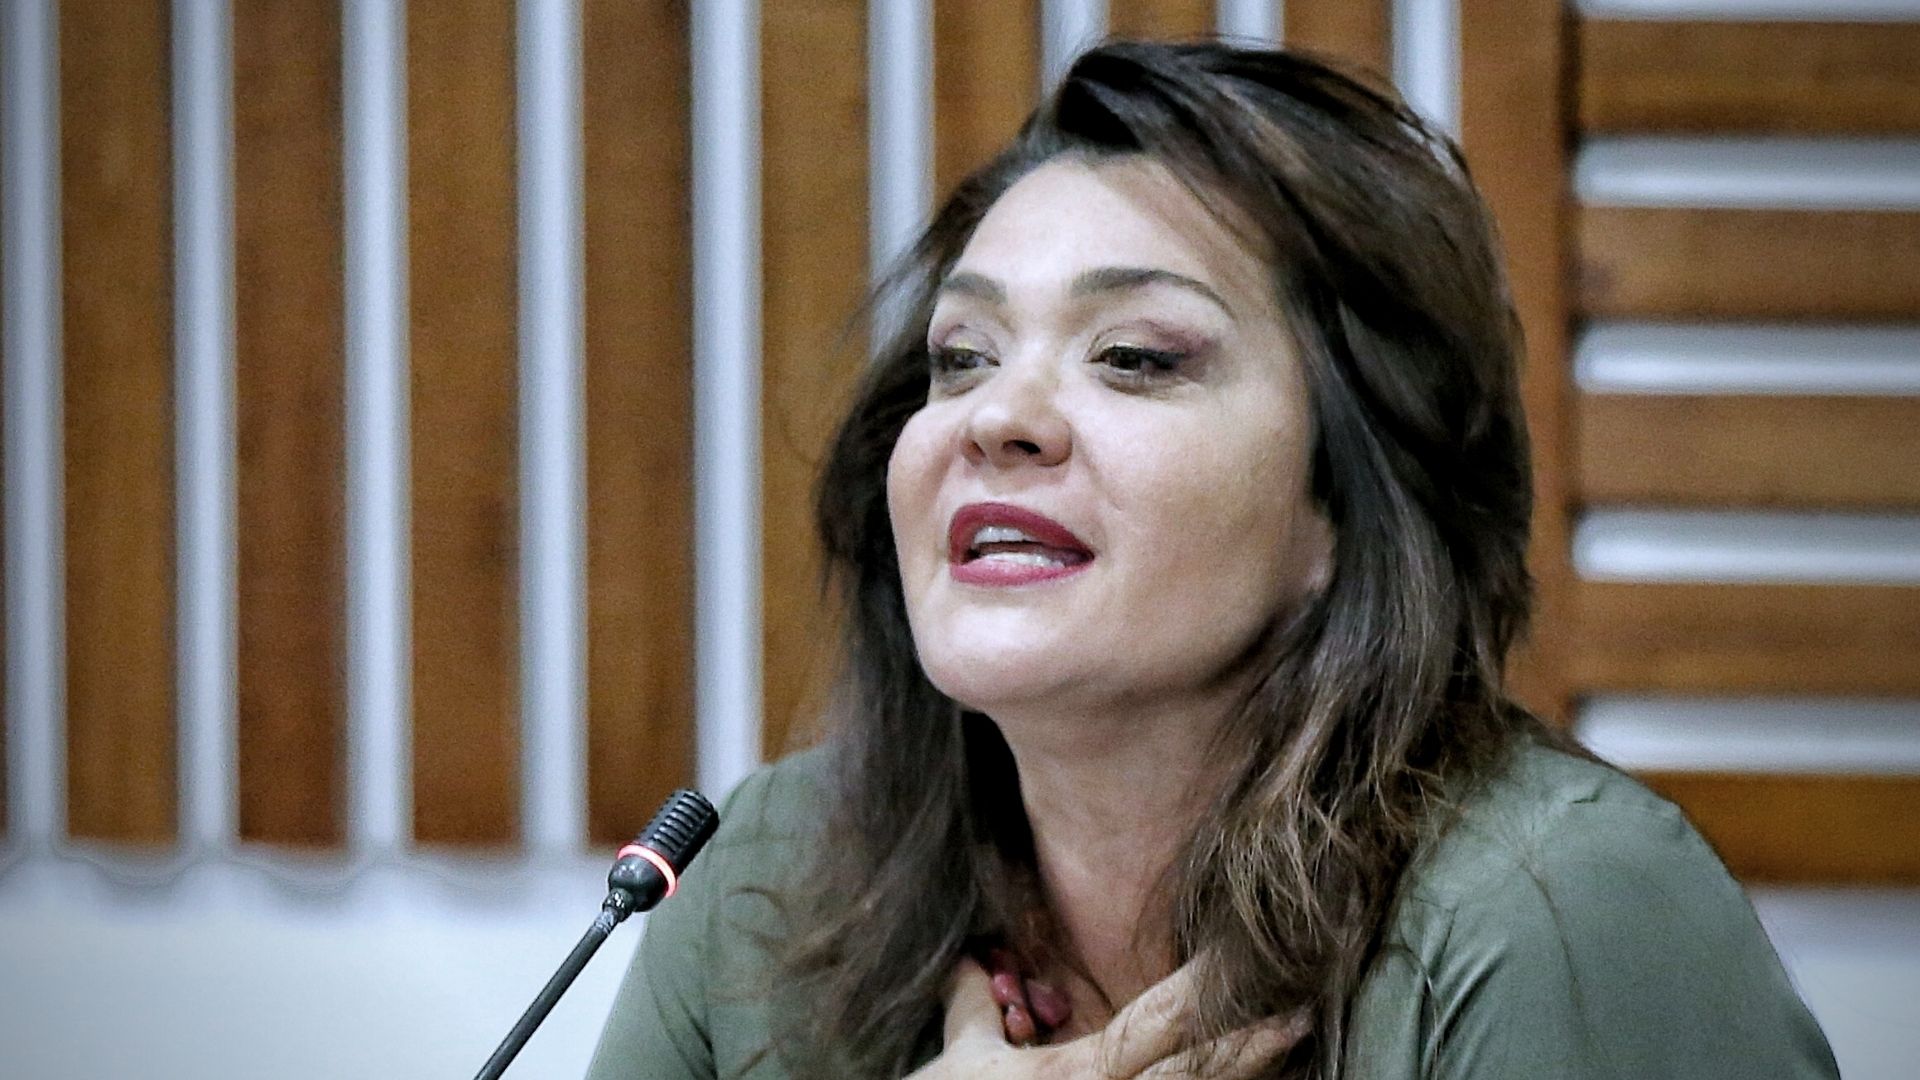 Representante por el Centro Democrático Margarita Restrepo se refirió a la reunión de Uribe con Petro: “El expresidente no fue a recibir mermelada ni a vender sus principios”